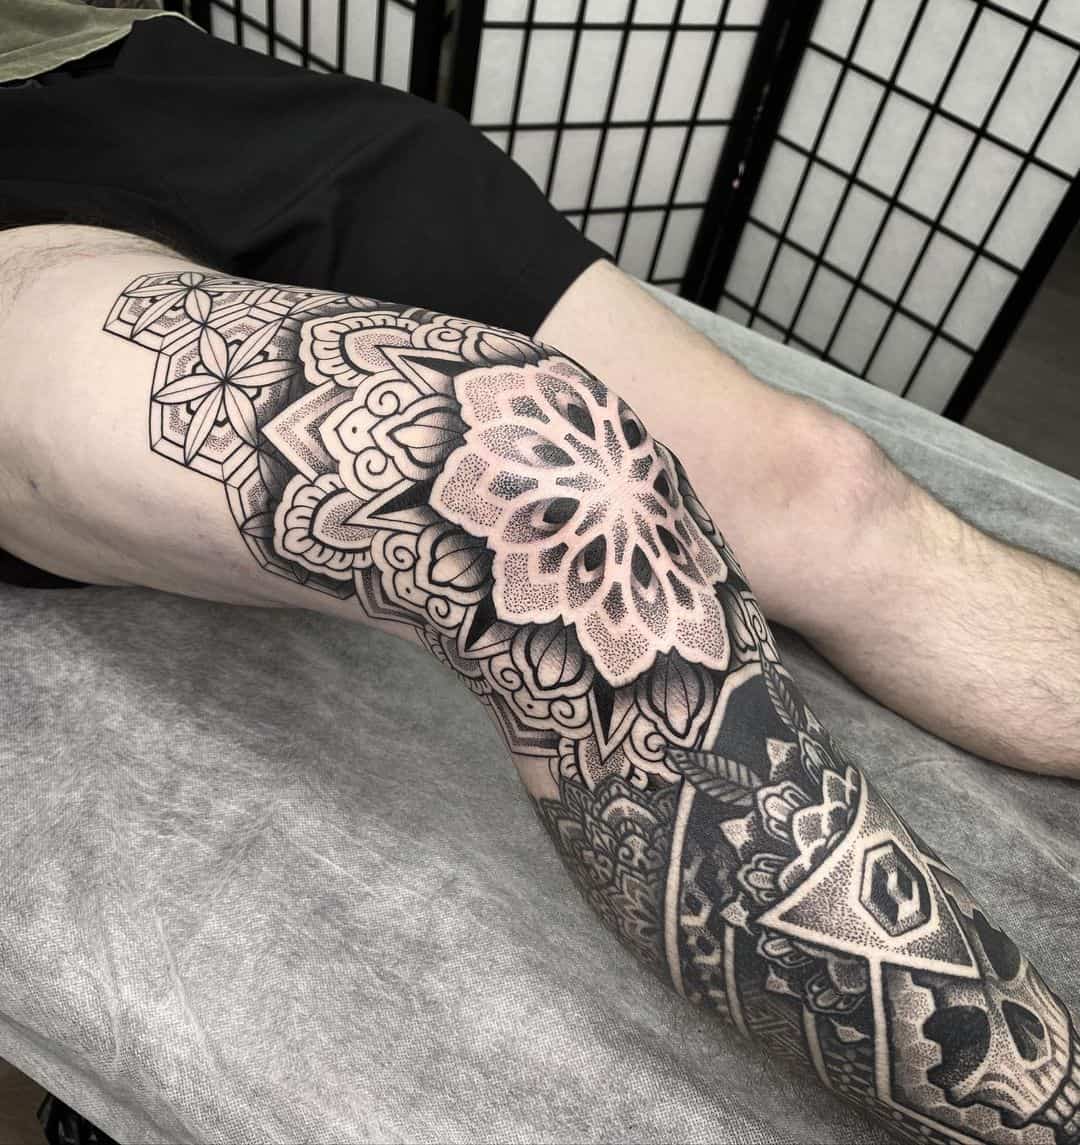 Geometric tattoo on leg by shubeytattoos